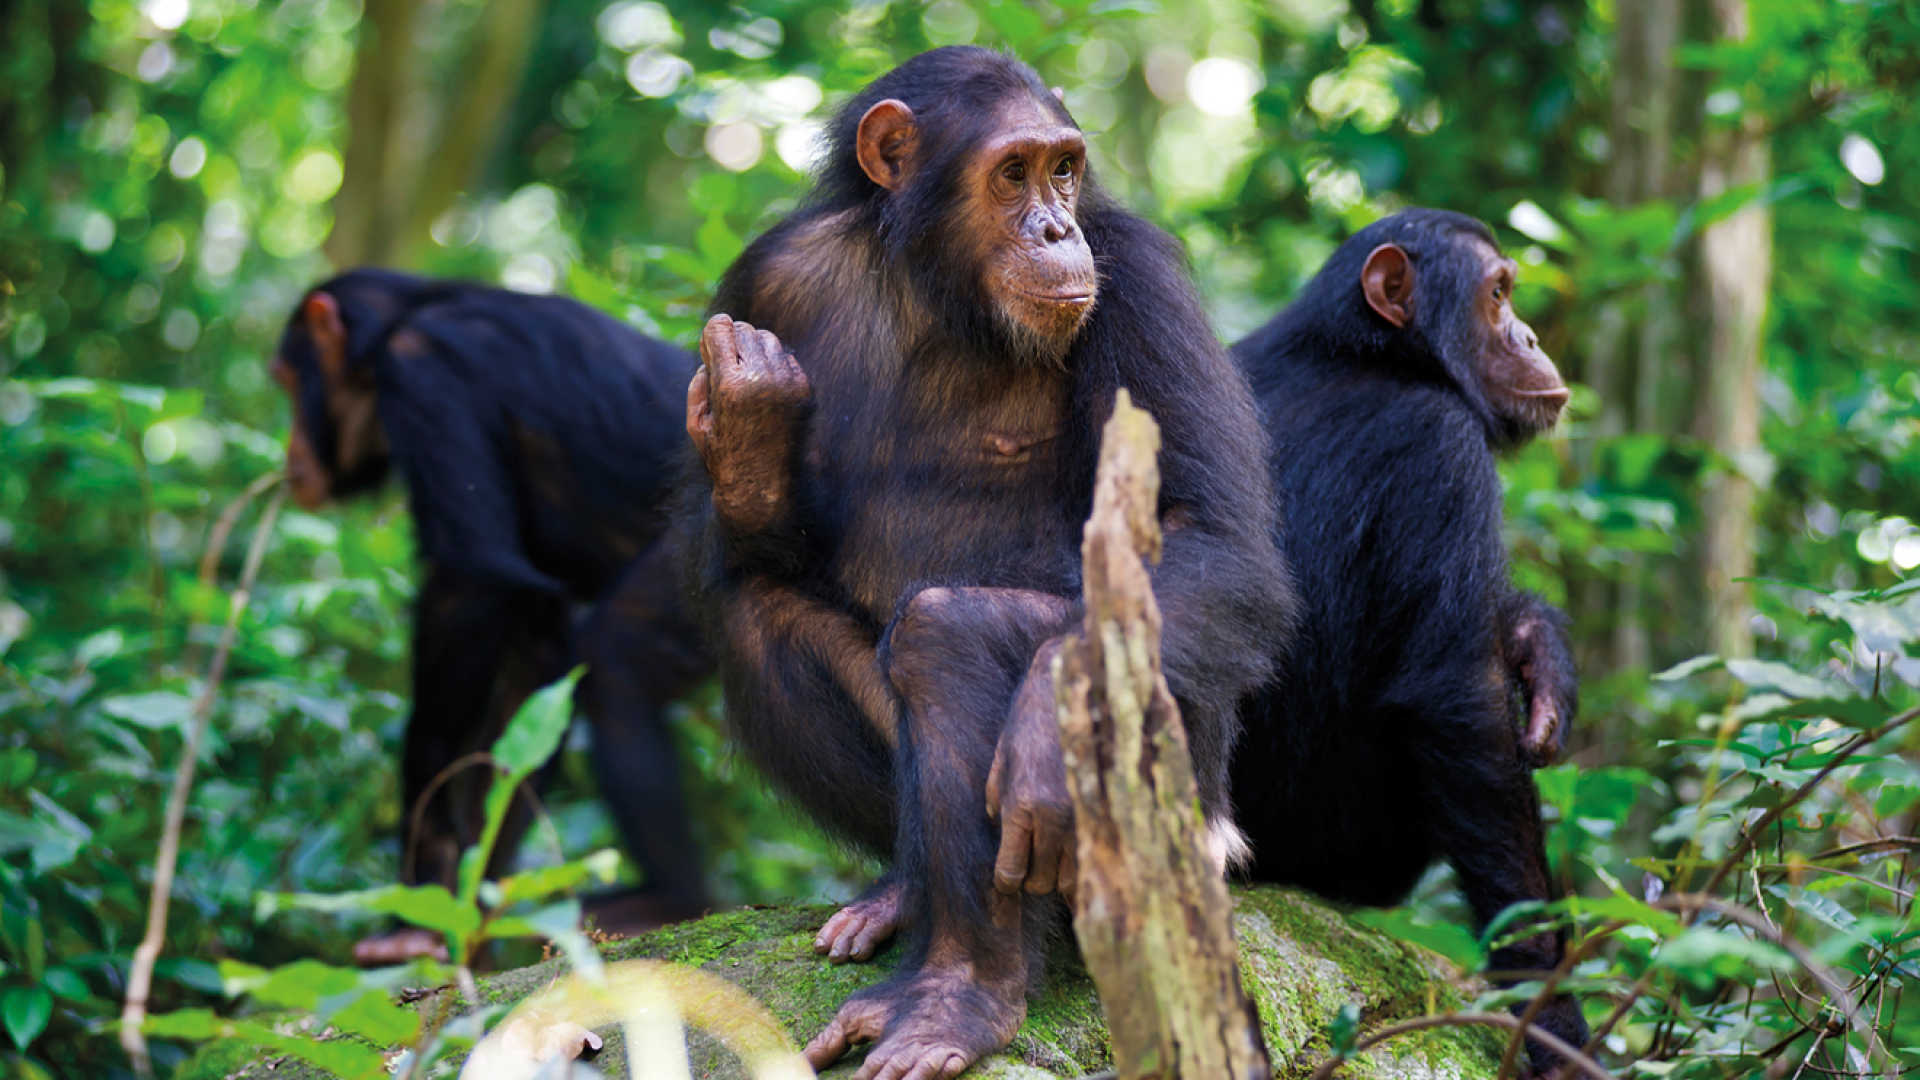 Travel Guide for Chimpanzee Trekking in Rwanda 2022